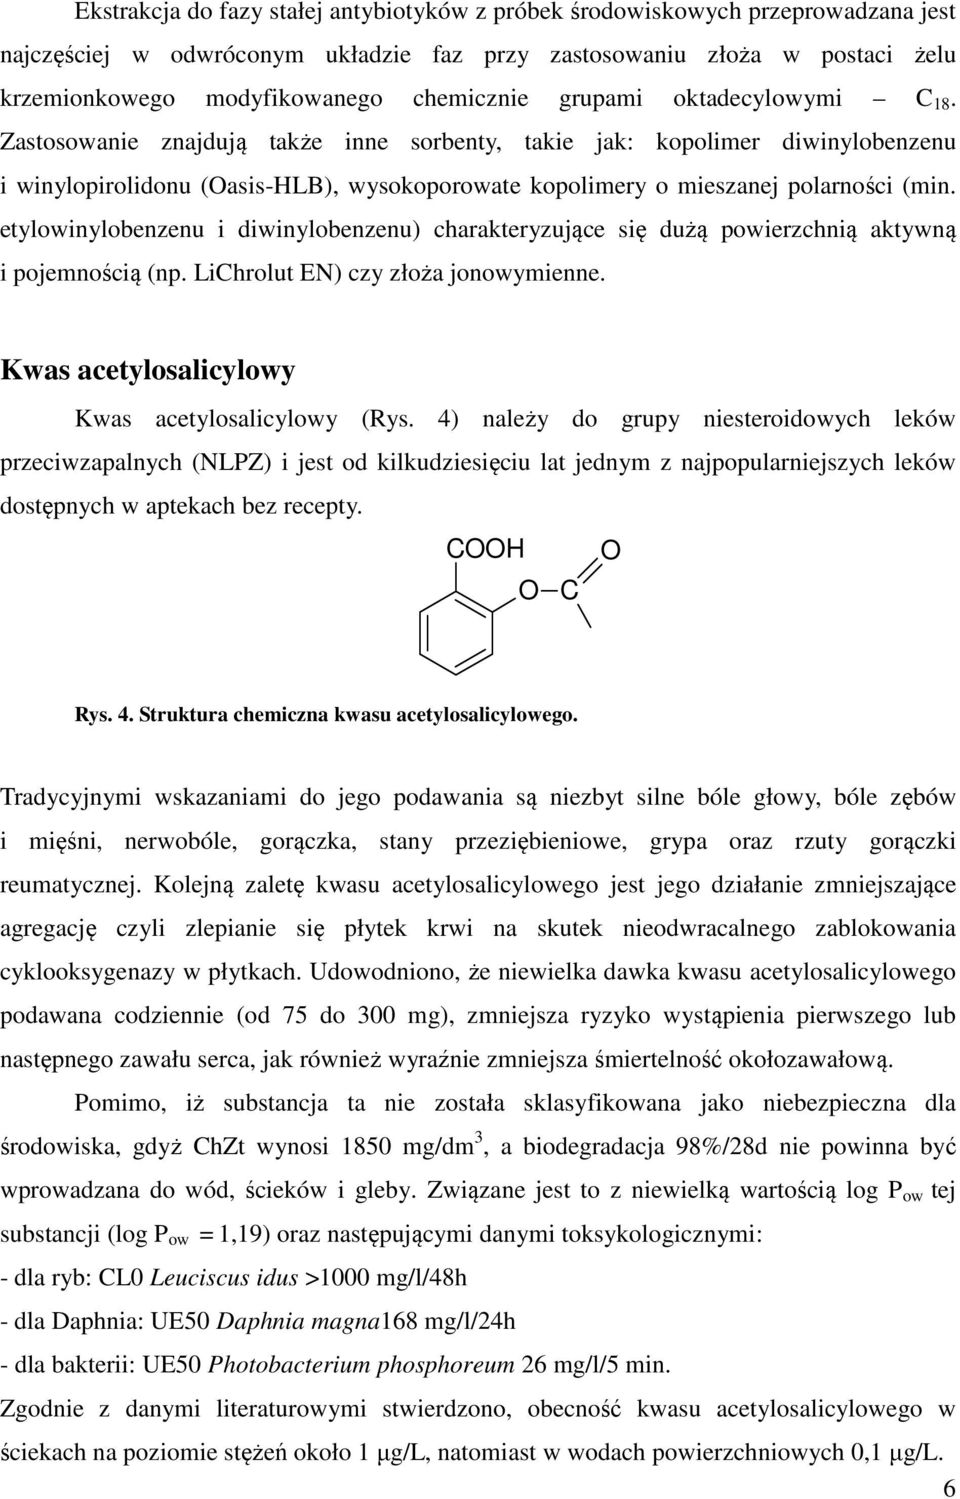 Zastosowanie znajdują także inne sorbenty, takie jak: kopolimer diwinylobenzenu i winylopirolidonu (Oasis-HLB), wysokoporowate kopolimery o mieszanej polarności (min.